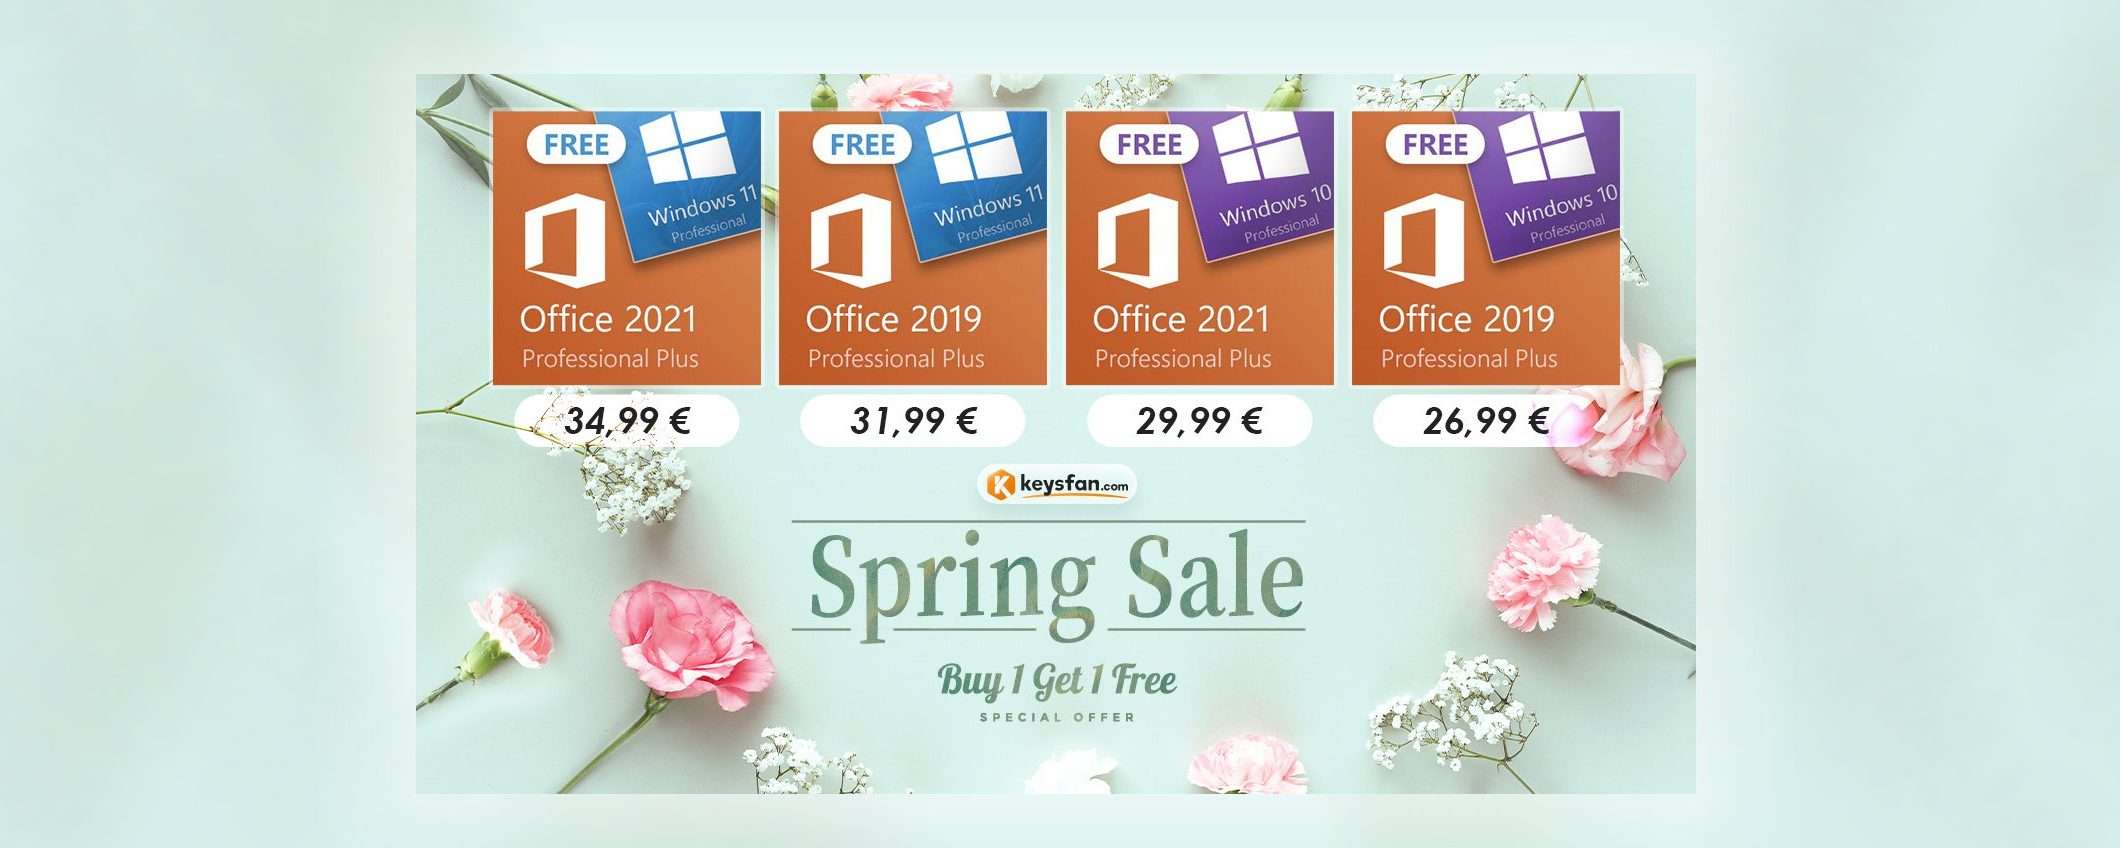 Windows gratis e Office 2021 in sconto su Keysfan, offerte di primavera